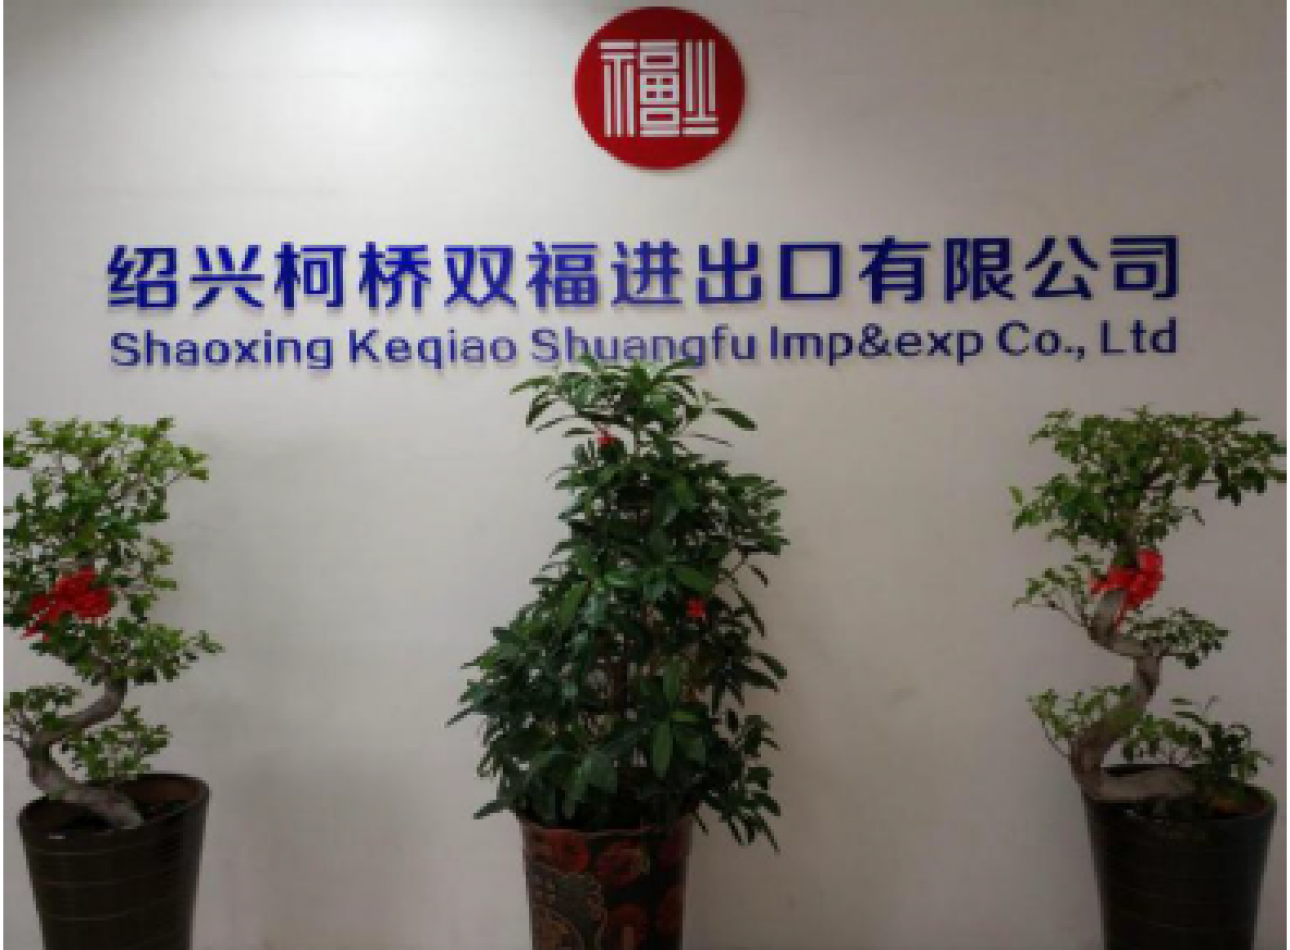 Shaoxing keqiao shuangfu imp & exp co.,ltd